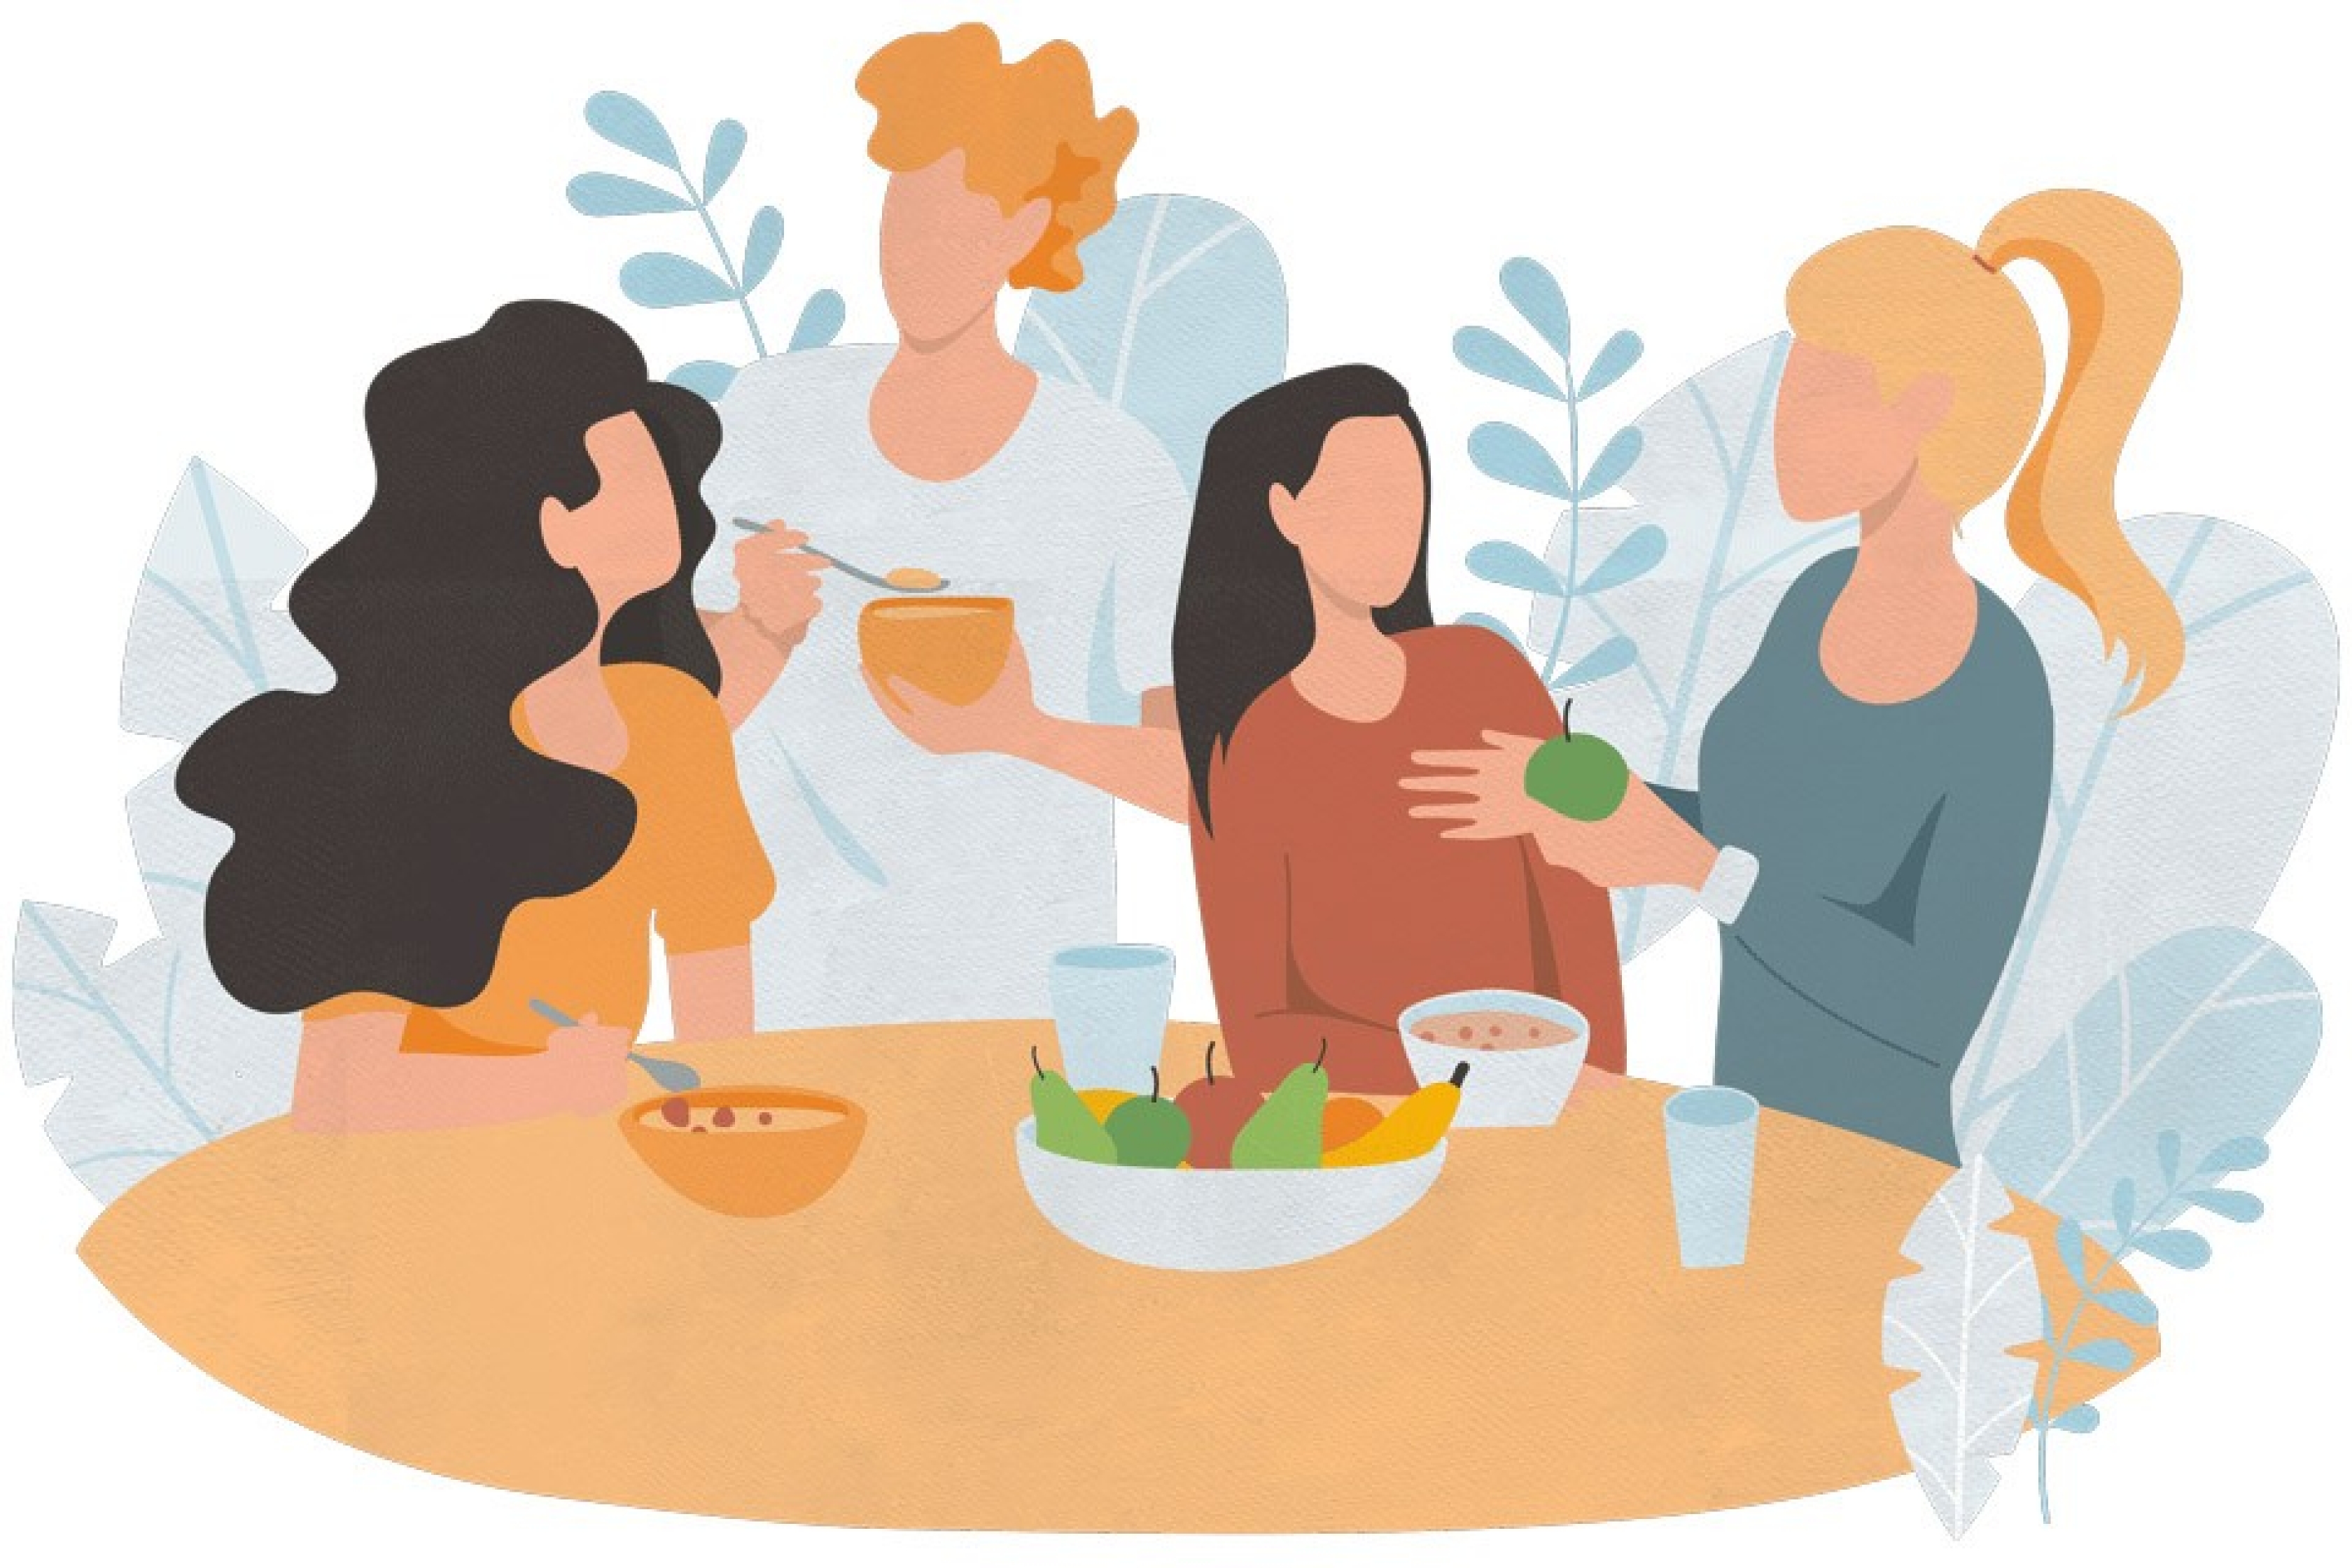 Intuitives Essen - die Illustration zeigt eine gemütliche Runde von Menschen am Essenstisch